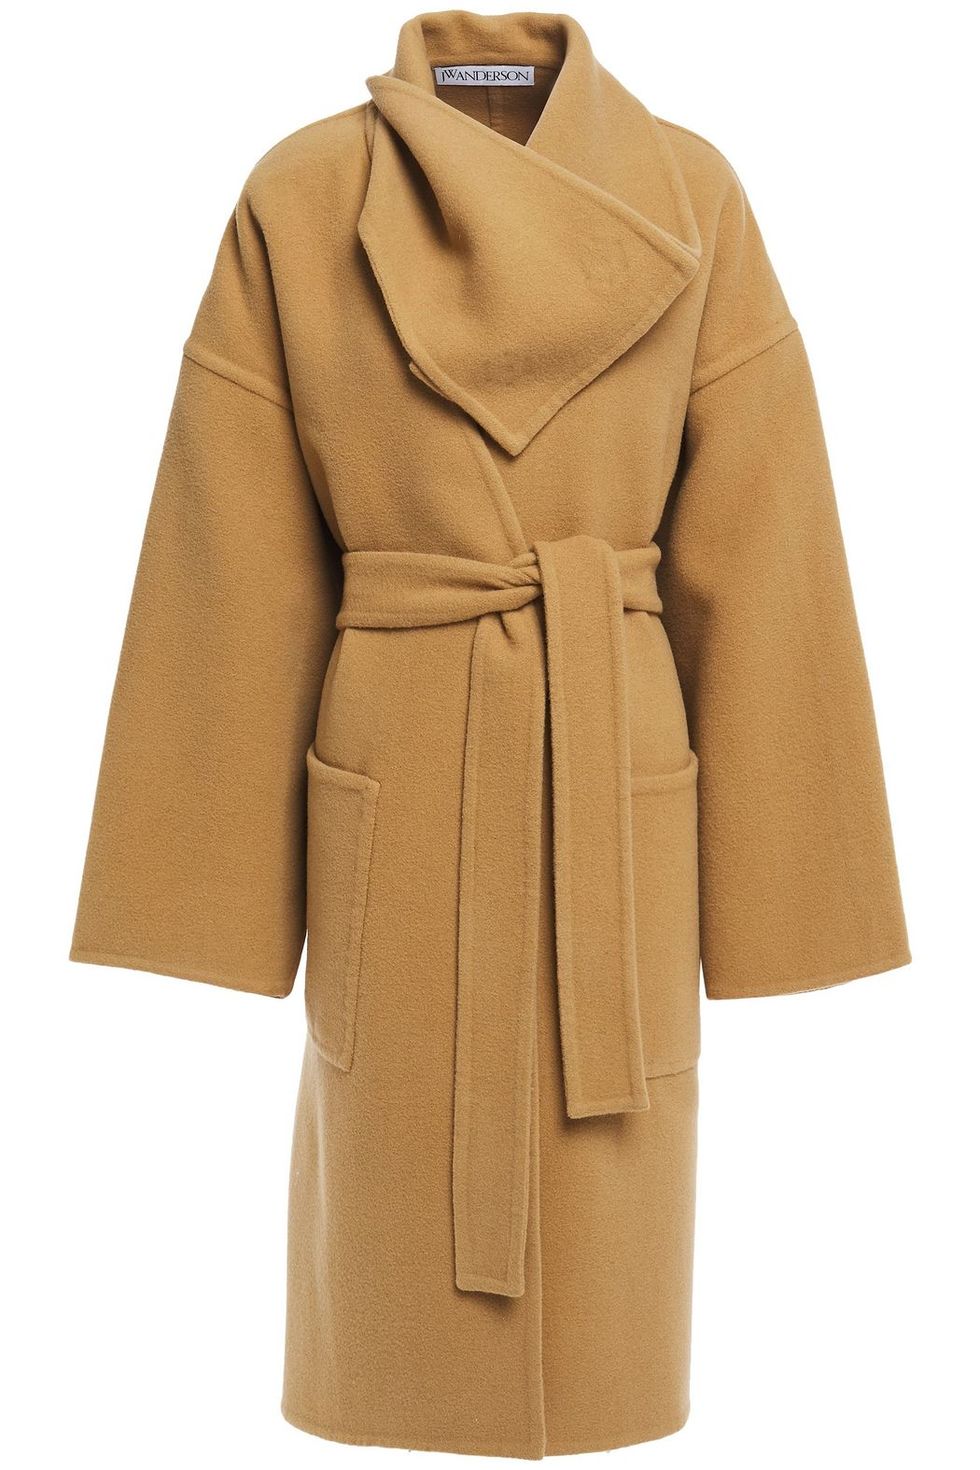 Moda Cappotti 2021: cappotto lana & cahsmere